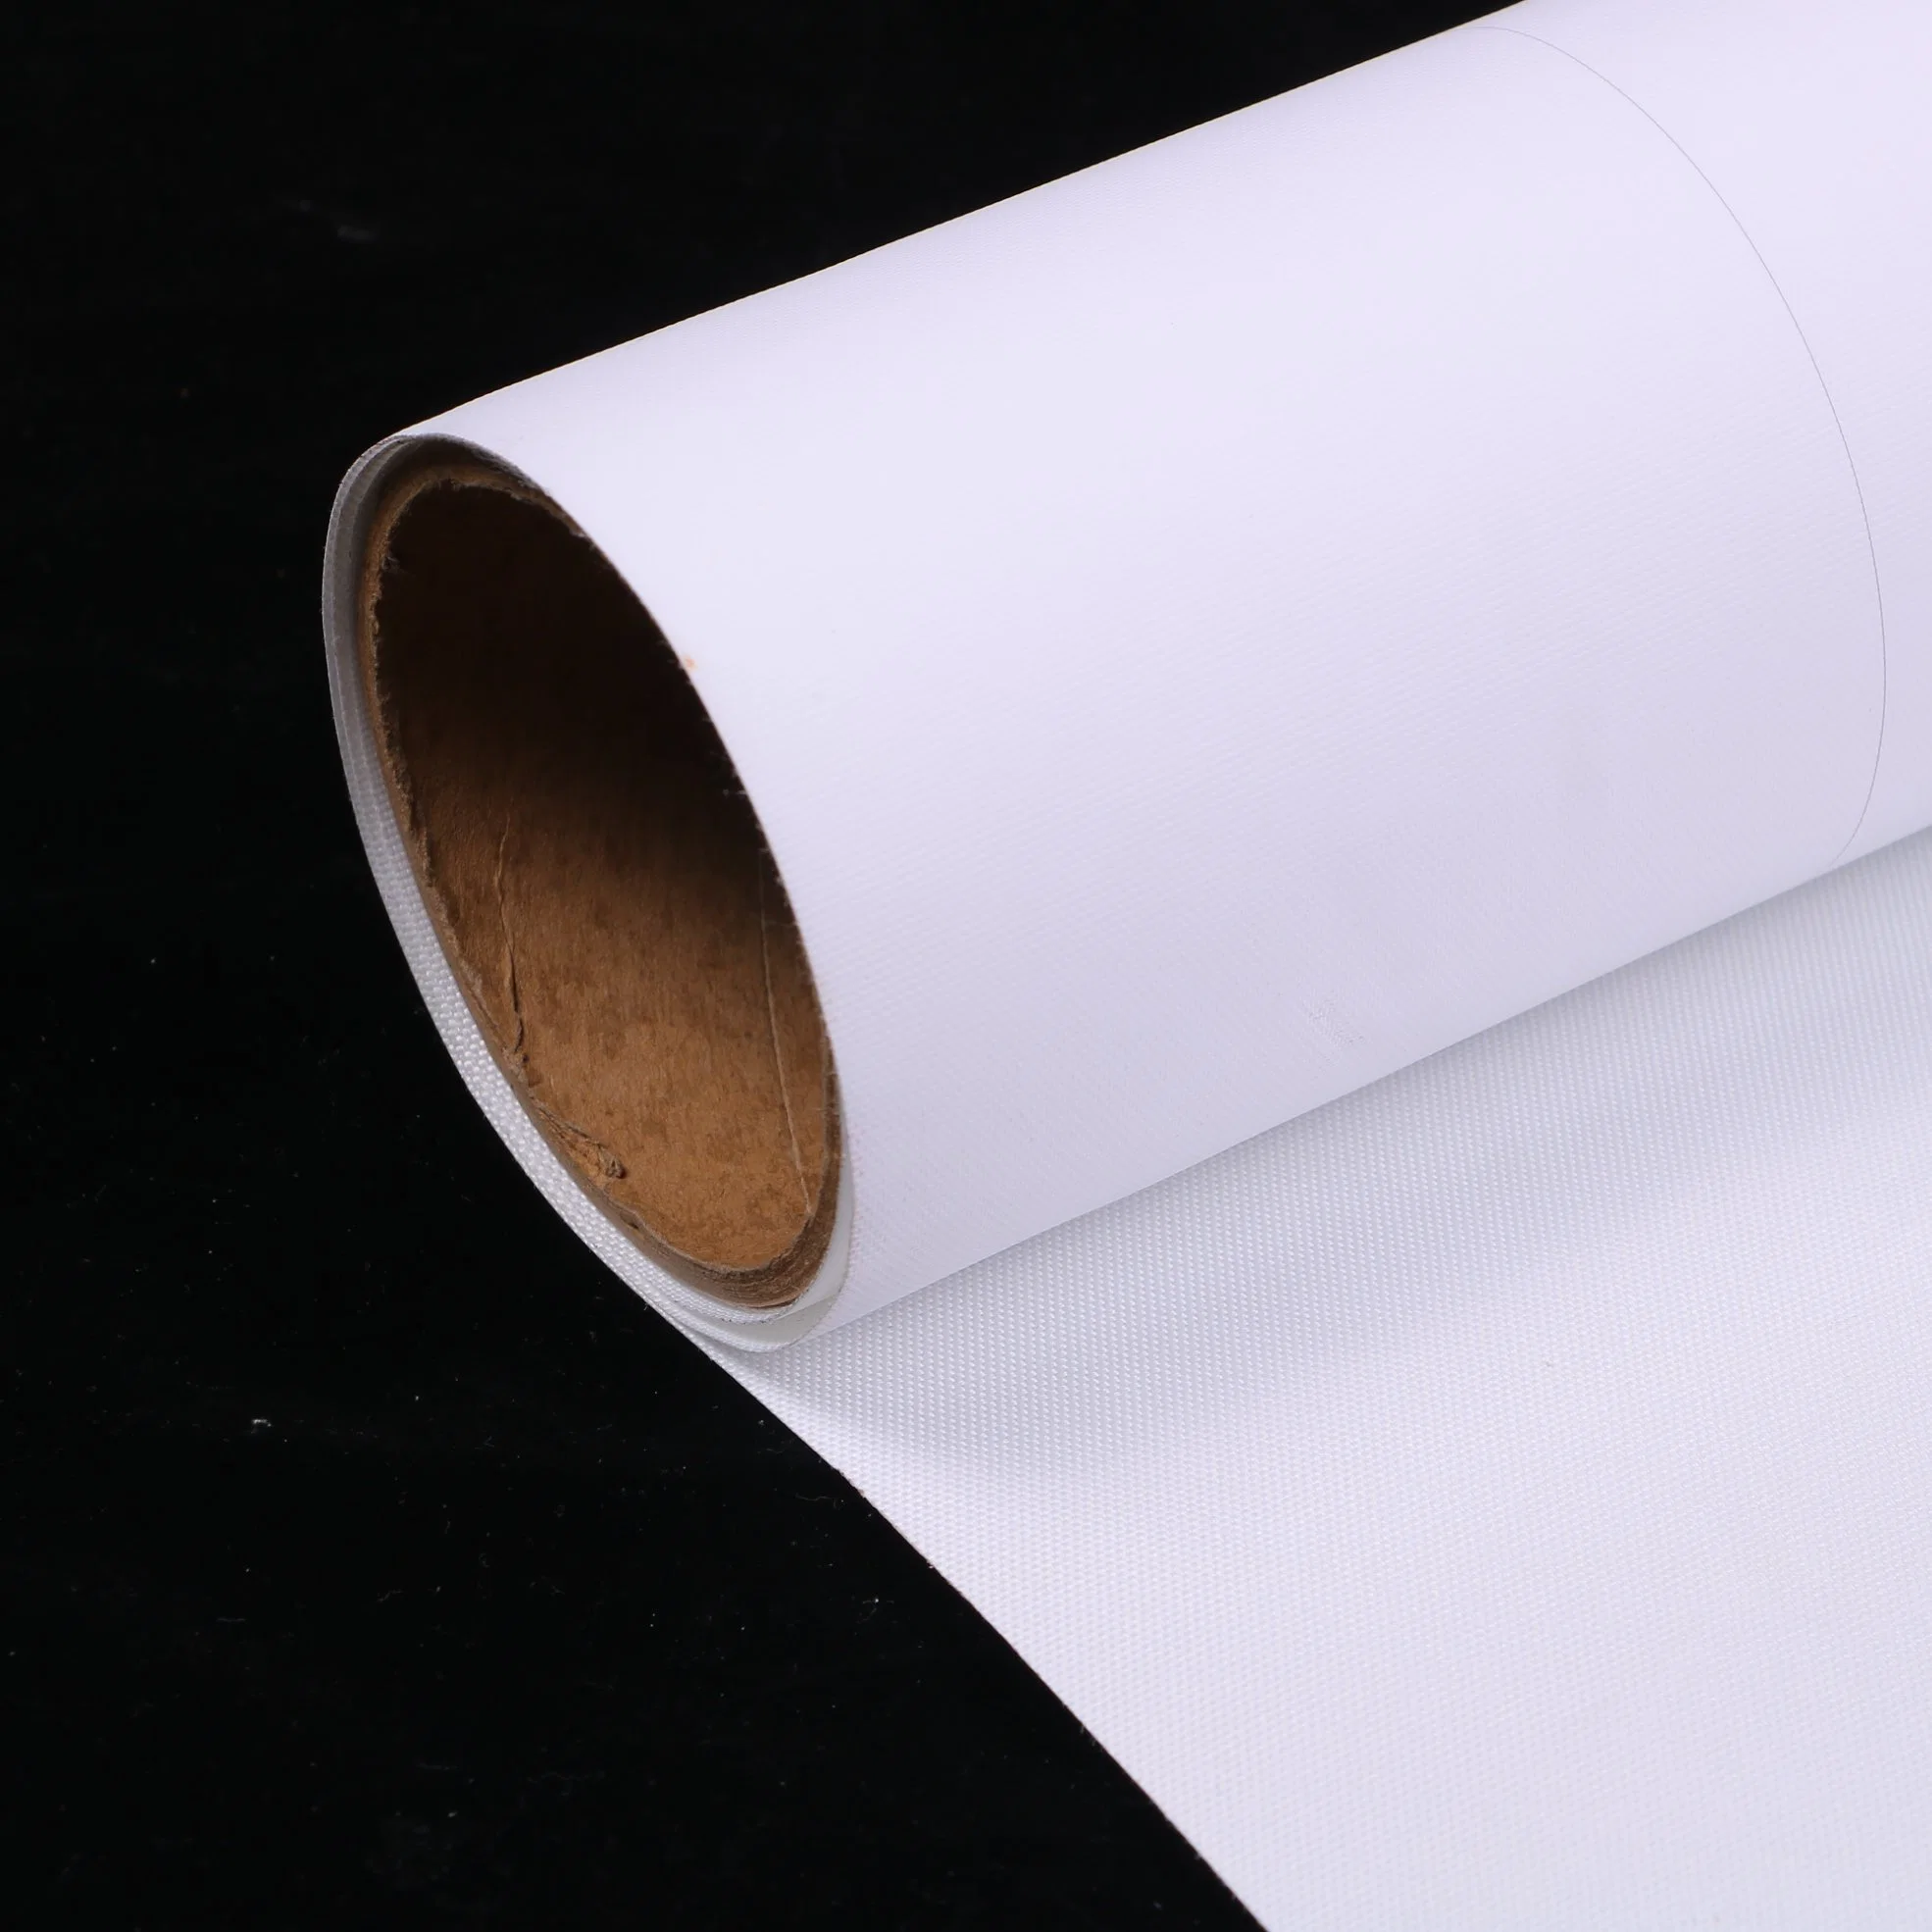 Blanc blanc blanc mat semi-brillant/brillant polyester/coton/Polycotton papier jet d'encre Art toile artiste Toile pour impression numérique